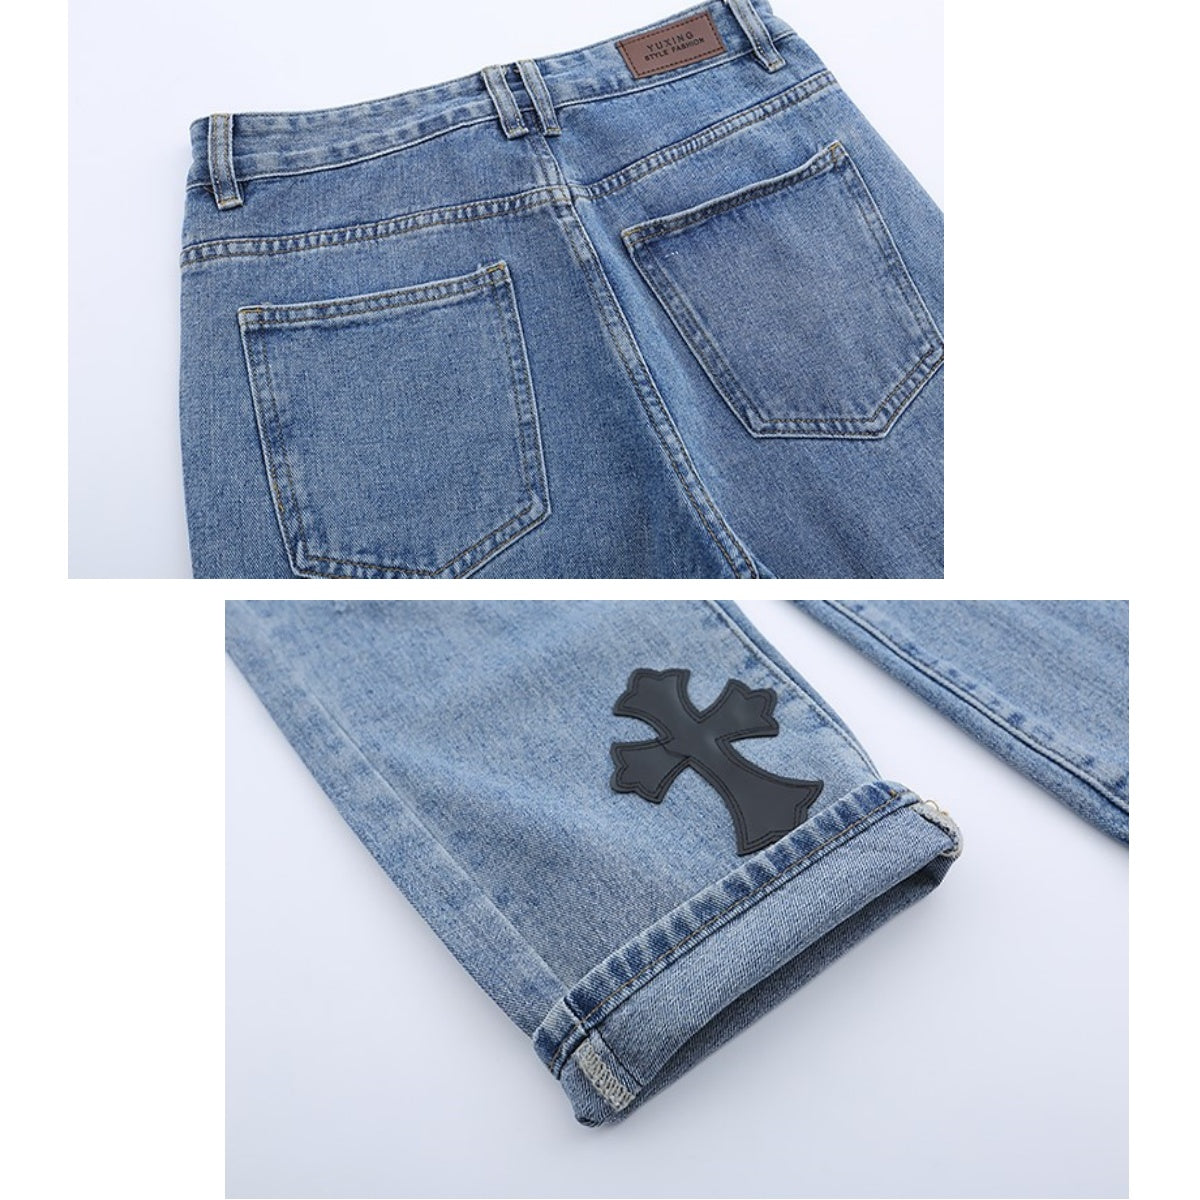 Jeans/クロスアップリケダメージジーンズ ST/No.23240